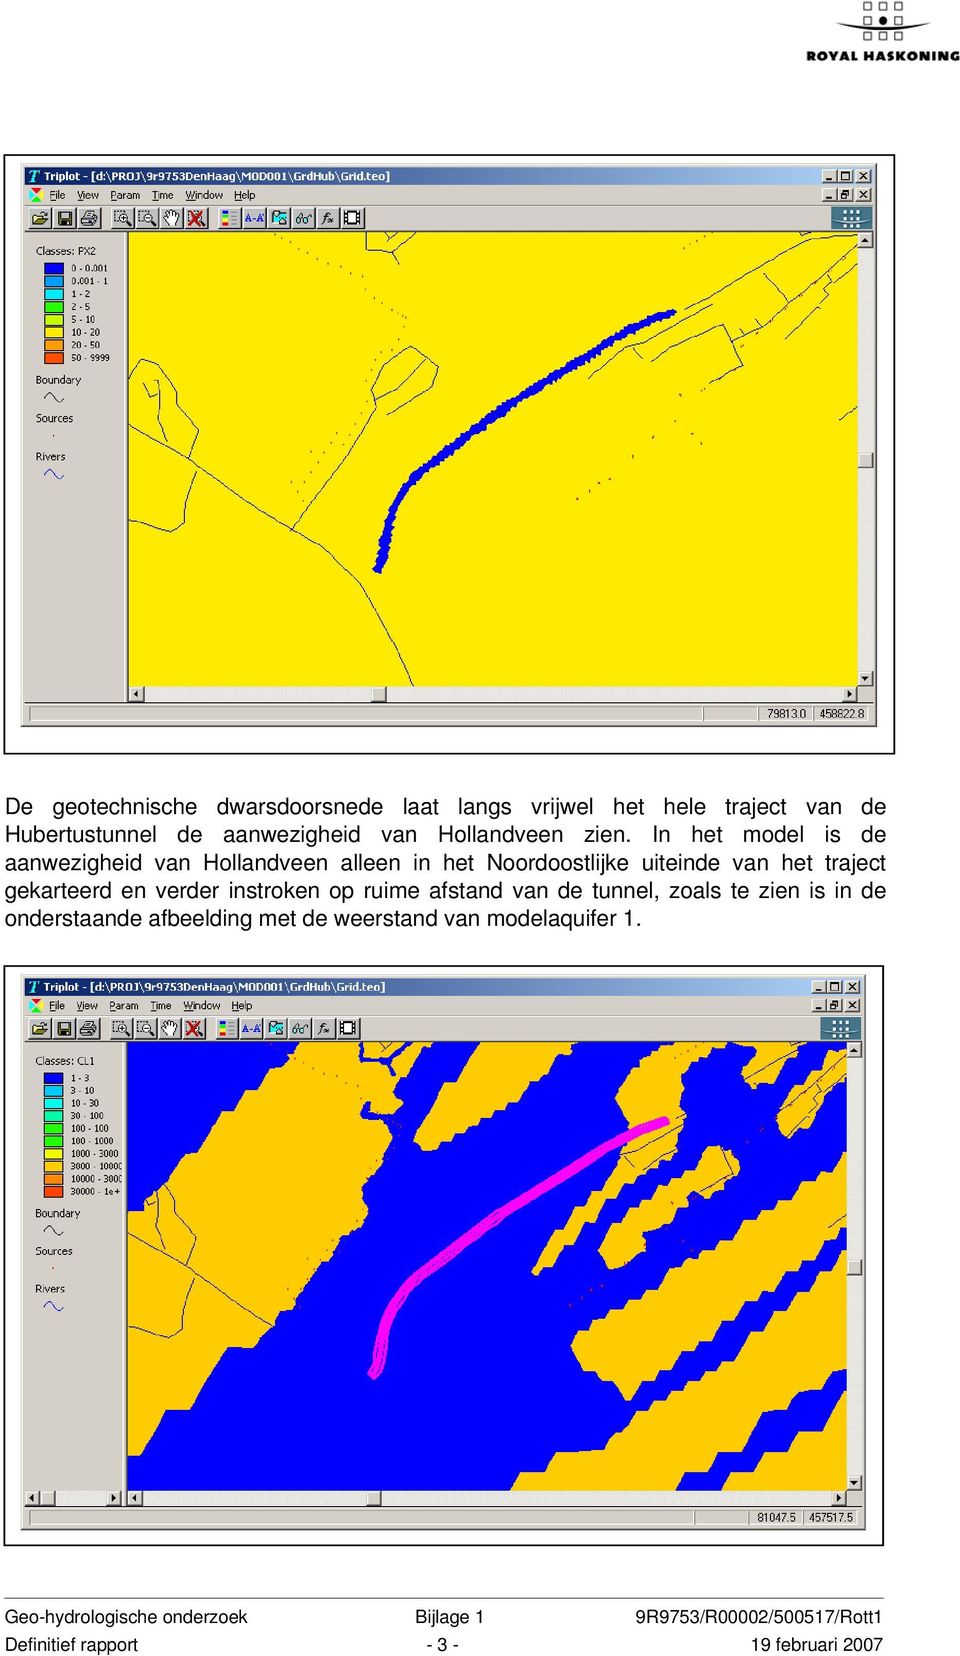 In het model is de aanwezigheid van Hollandveen alleen in het Noordoostlijke uiteinde van het traject gekarteerd en